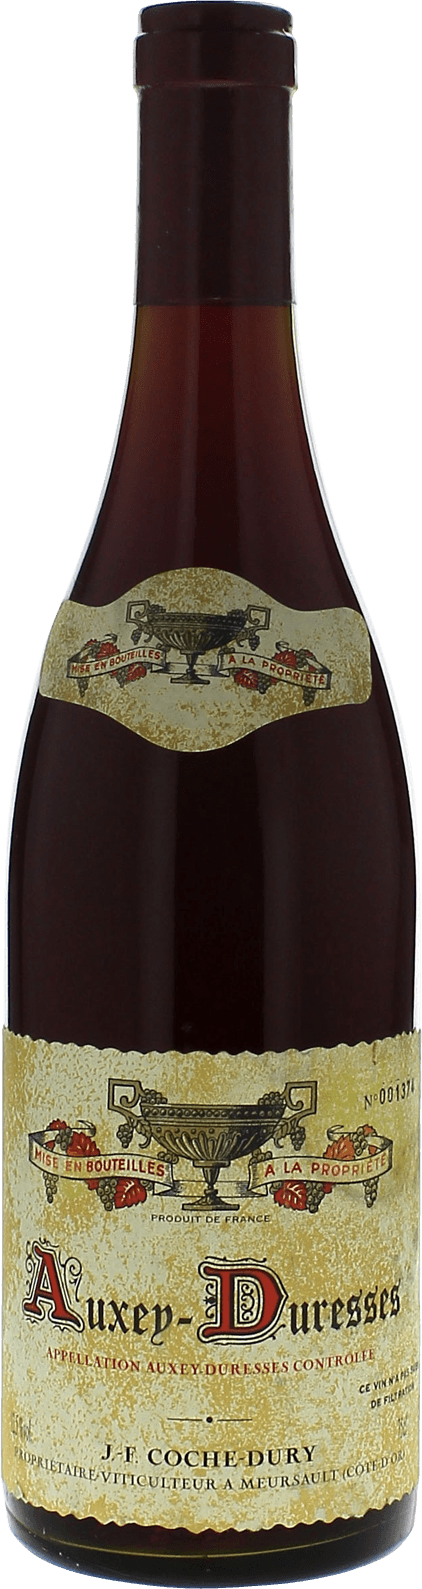 Auxey duresses cte de beaune 2012 Domaine COCHE-DURY, Bourgogne rouge